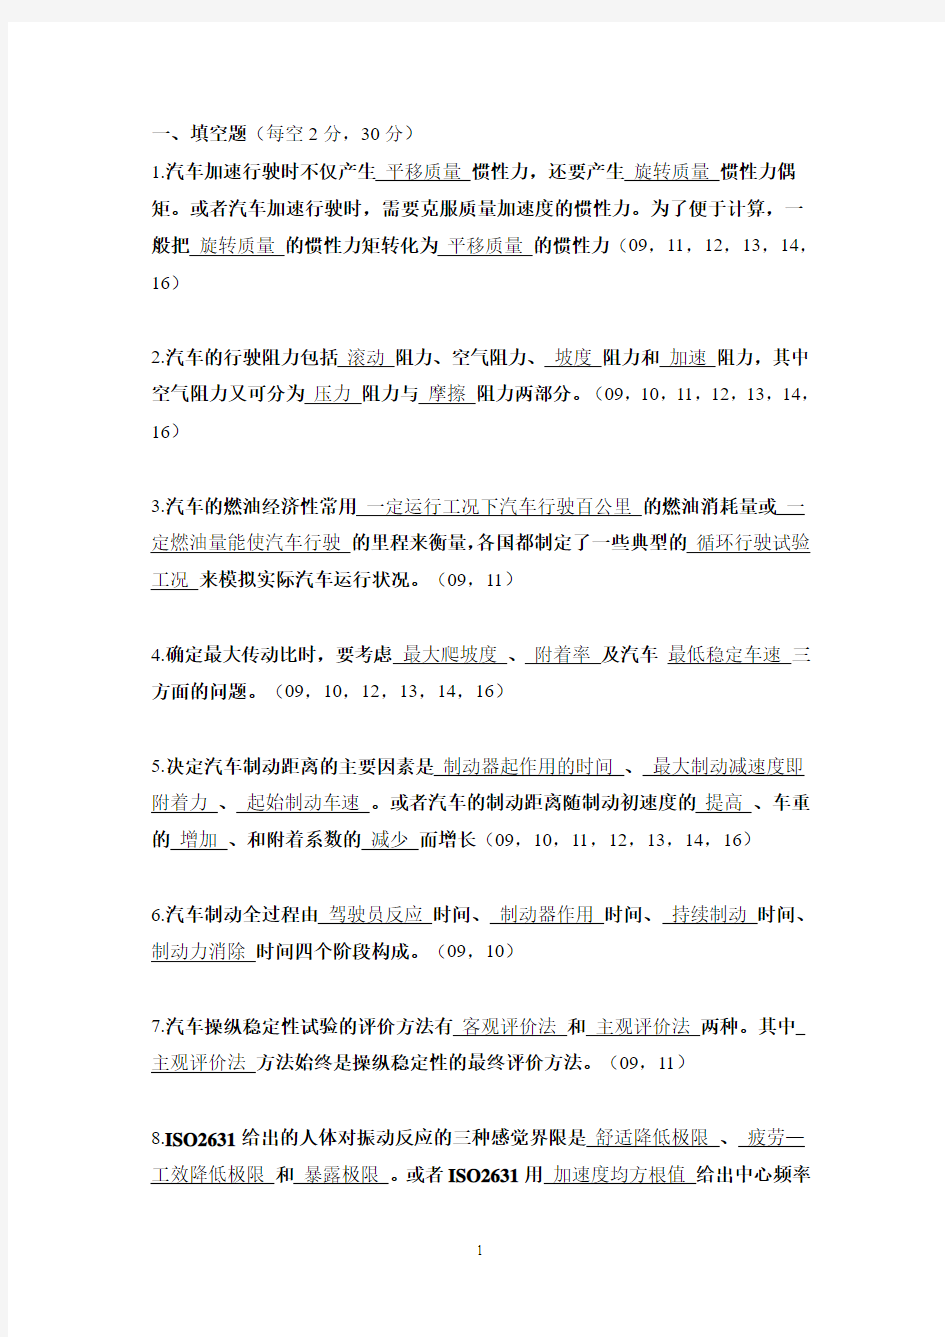 广东工业大学考研初试汽车理论整合版(09-16)汇总